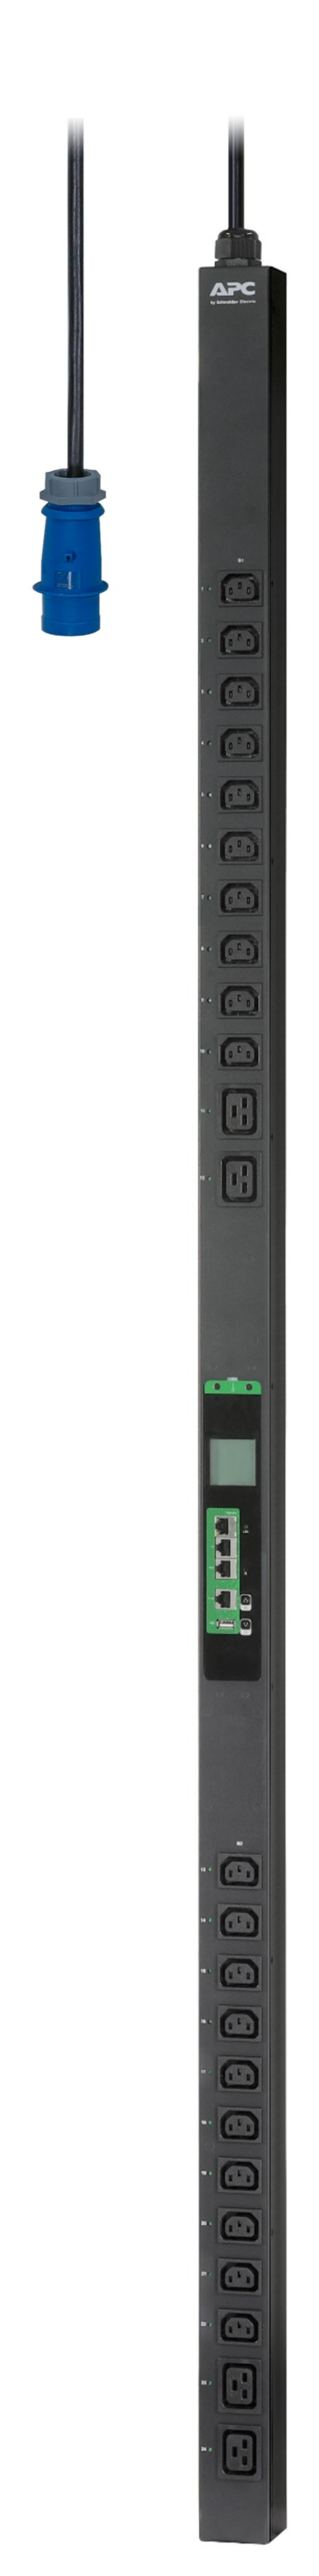 APC Easy Switched PDU EPDU1116S - Stromverteilungseinheit (Rack - einbaufähig)